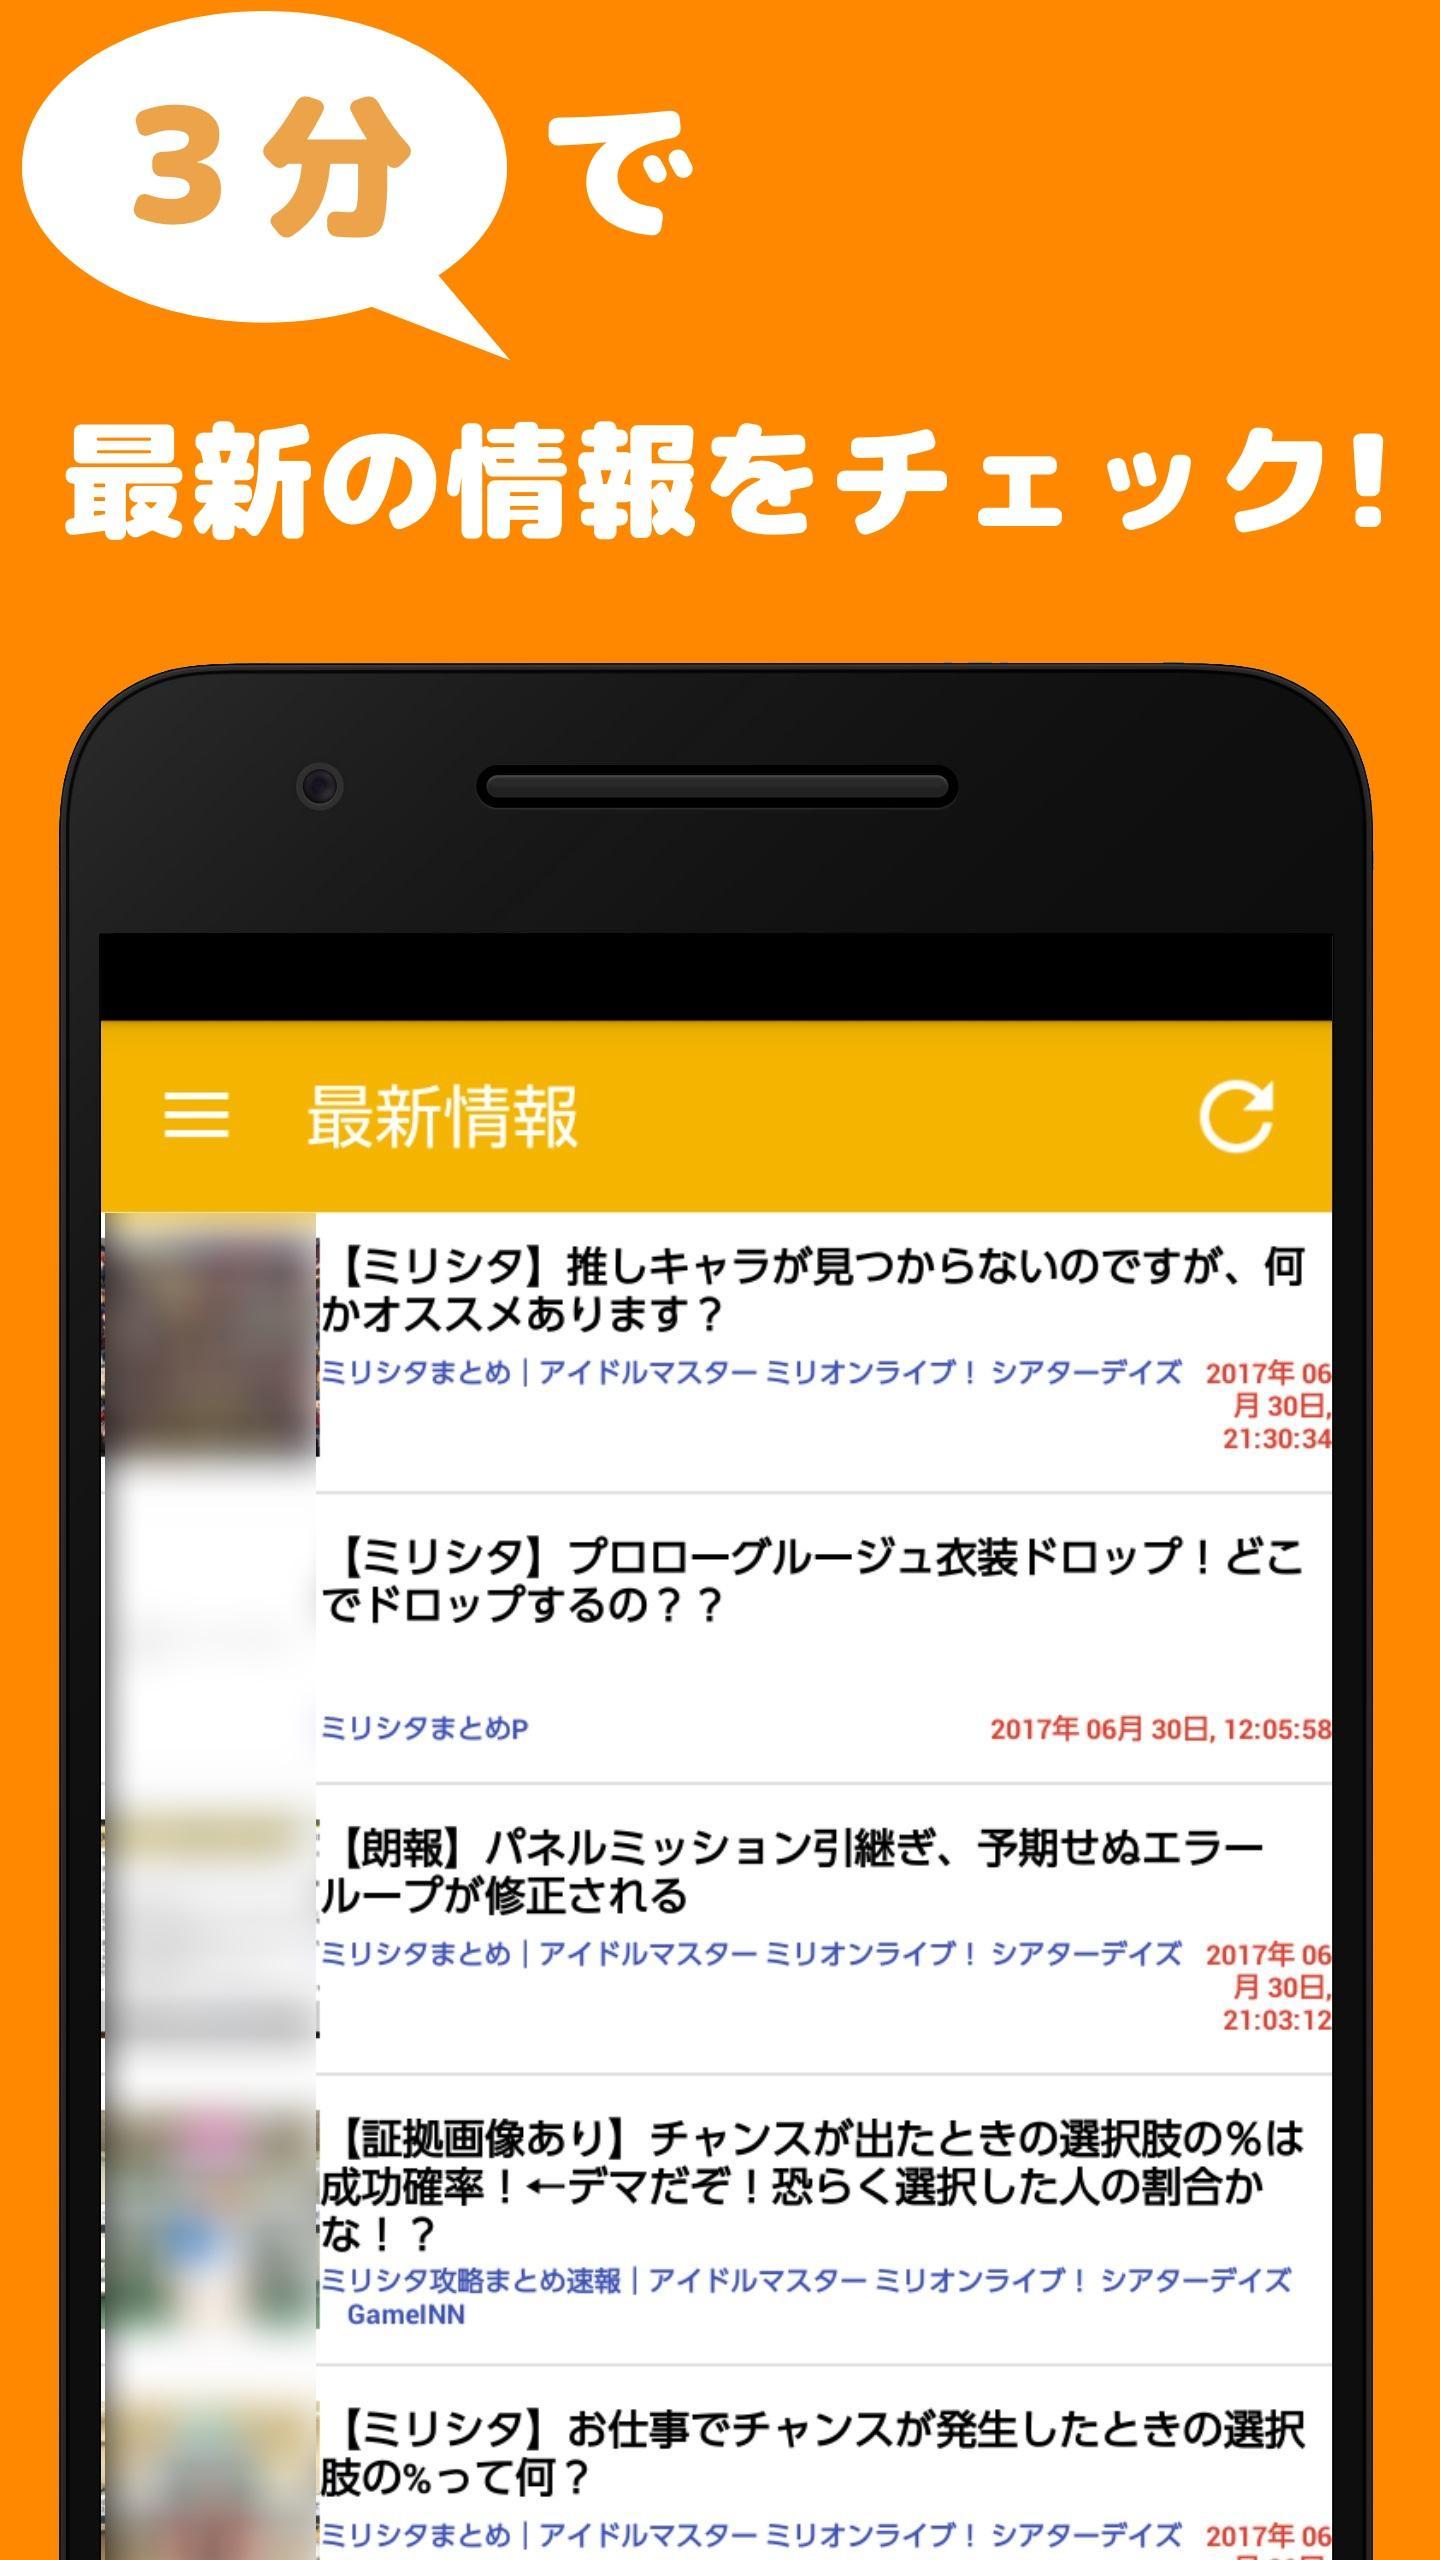 最速攻略まとめ For ミリシタ For Android Apk Download